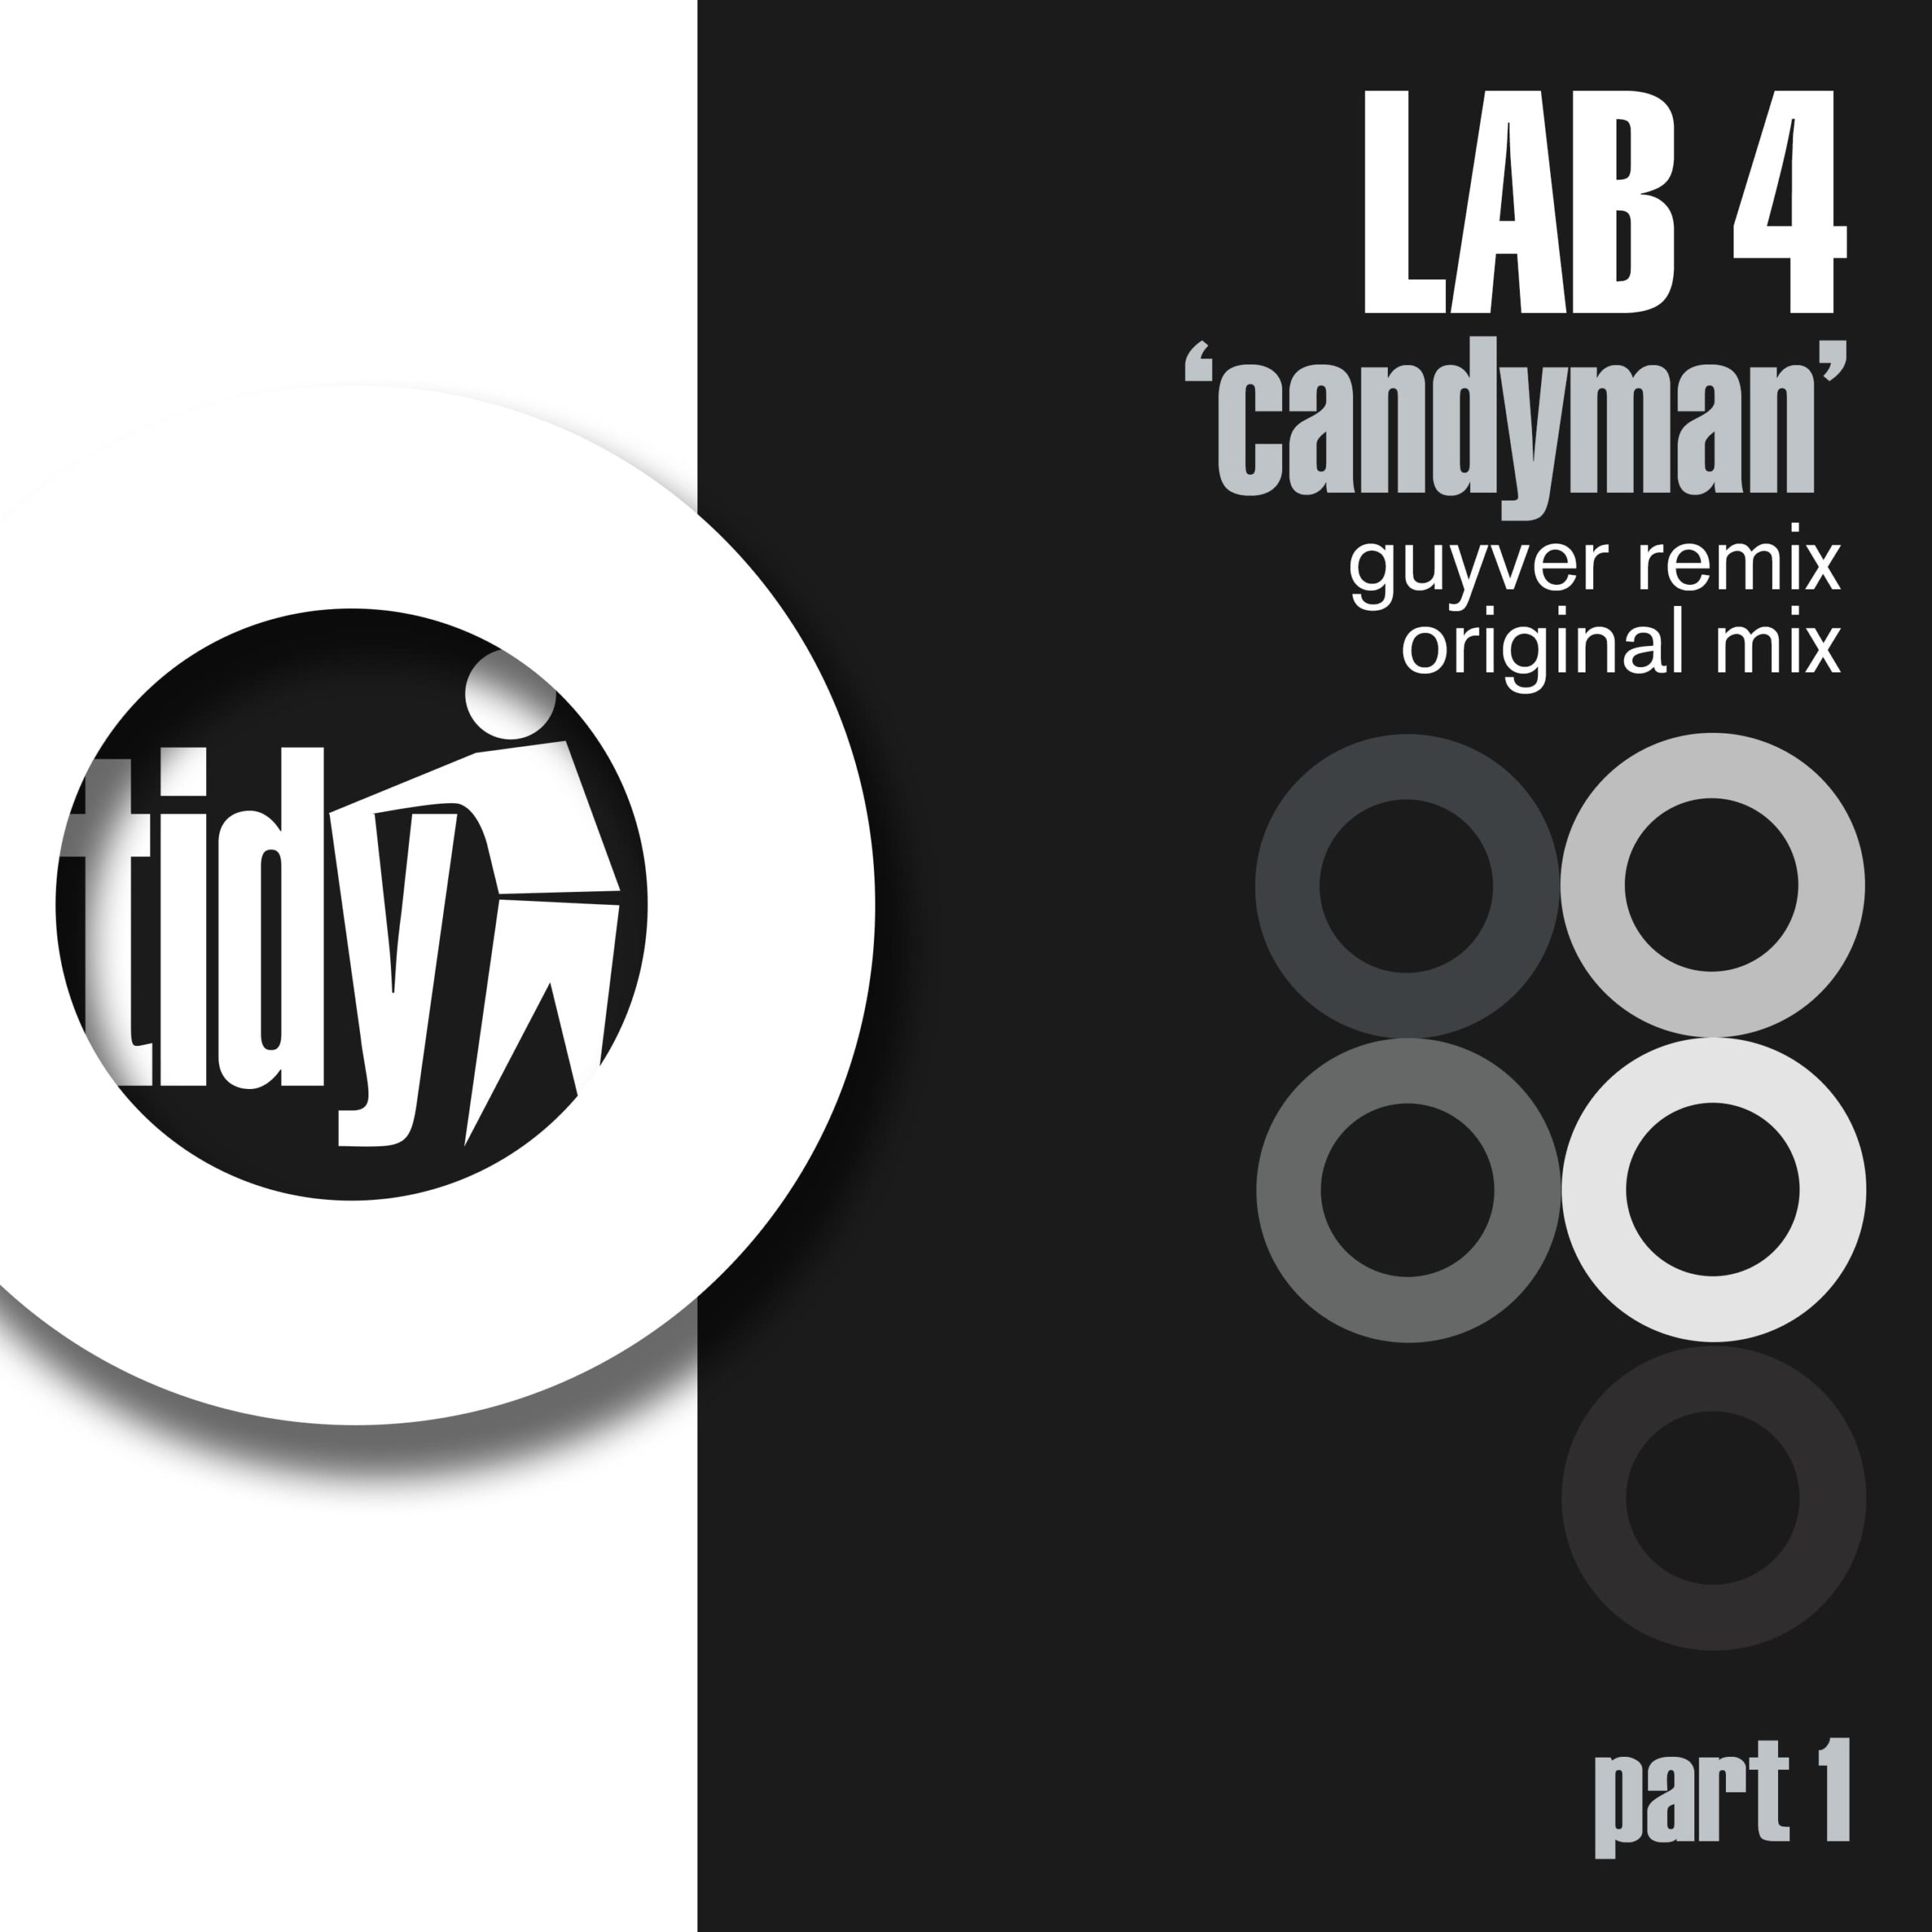 Lab 4 - Candyman